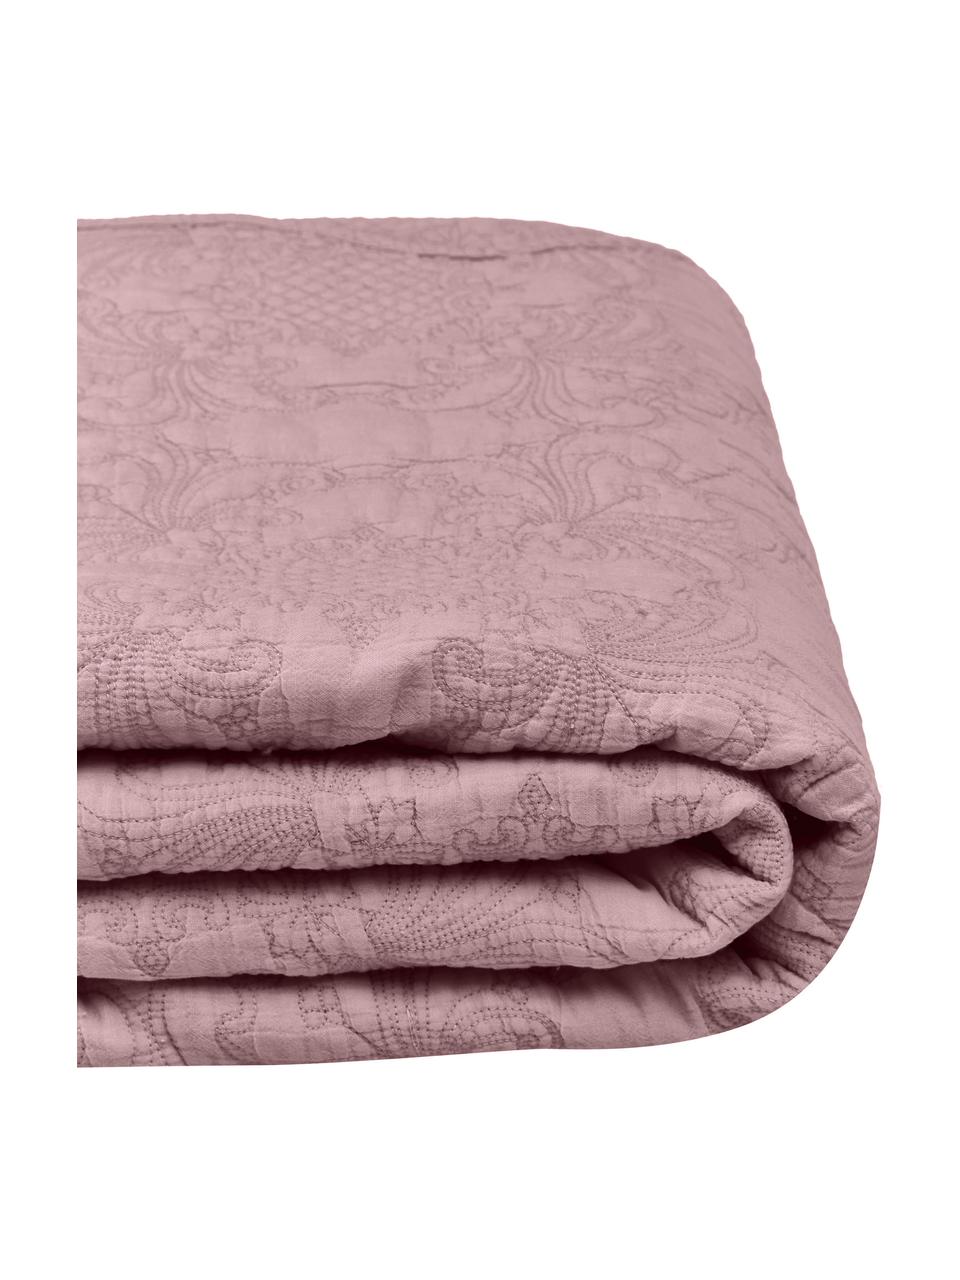 Geborduurde bedsprei Madlon van katoen in lila, Bekleding: 100% katoen, Lila, B 180 x L 250 cm (voor bedden tot 140 x 200)